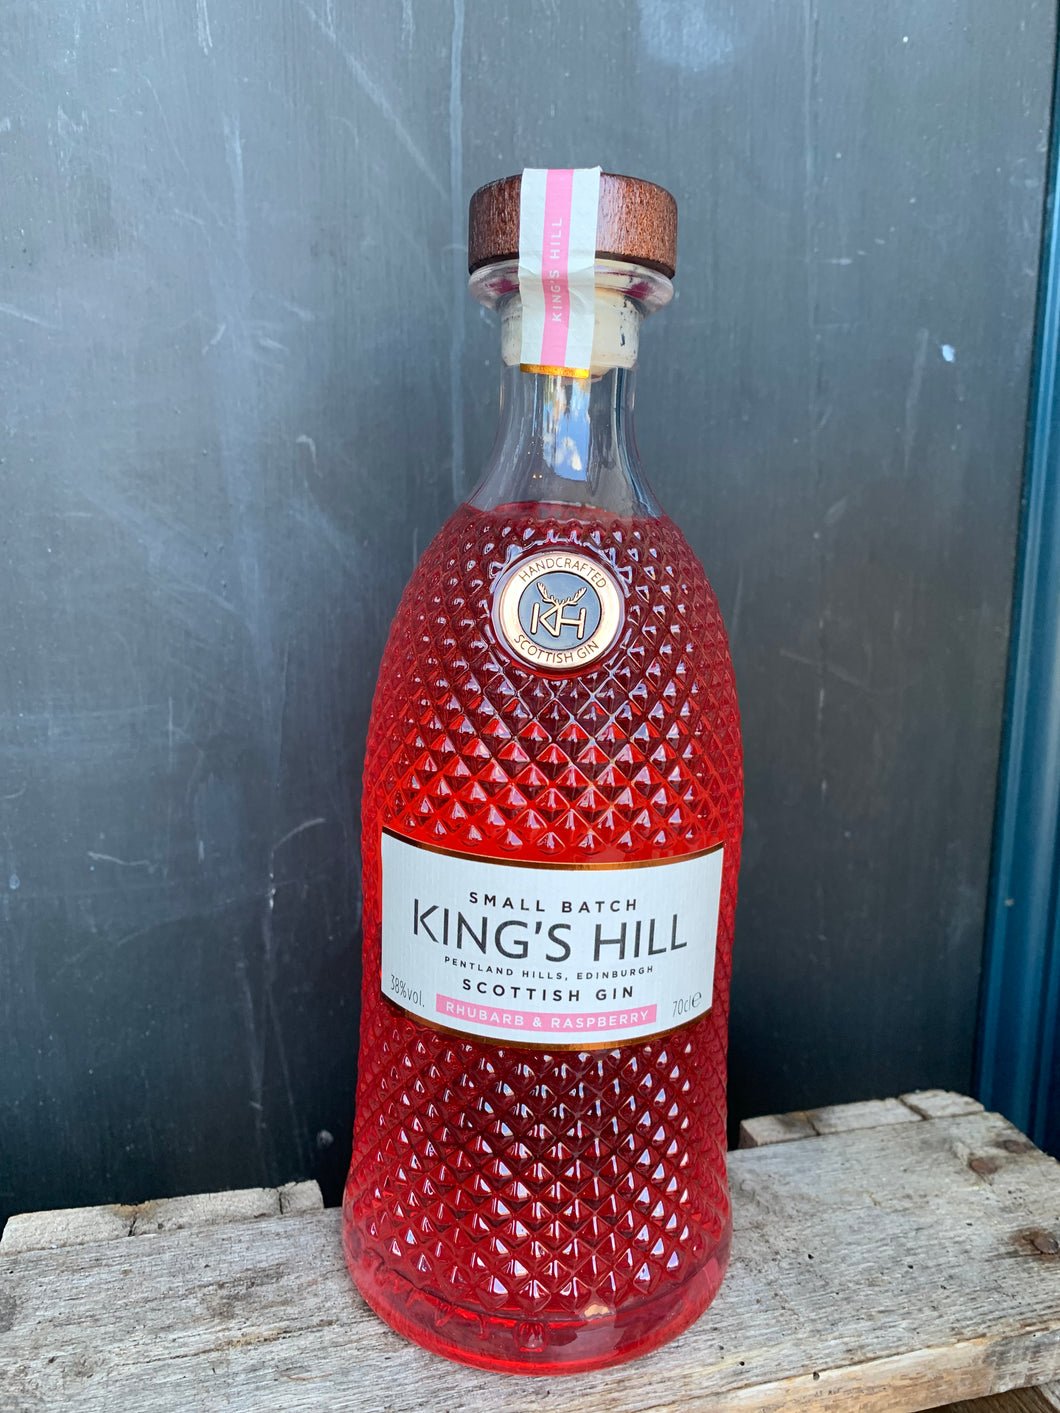 Kings hill gin - Rhubarb and Raspberry